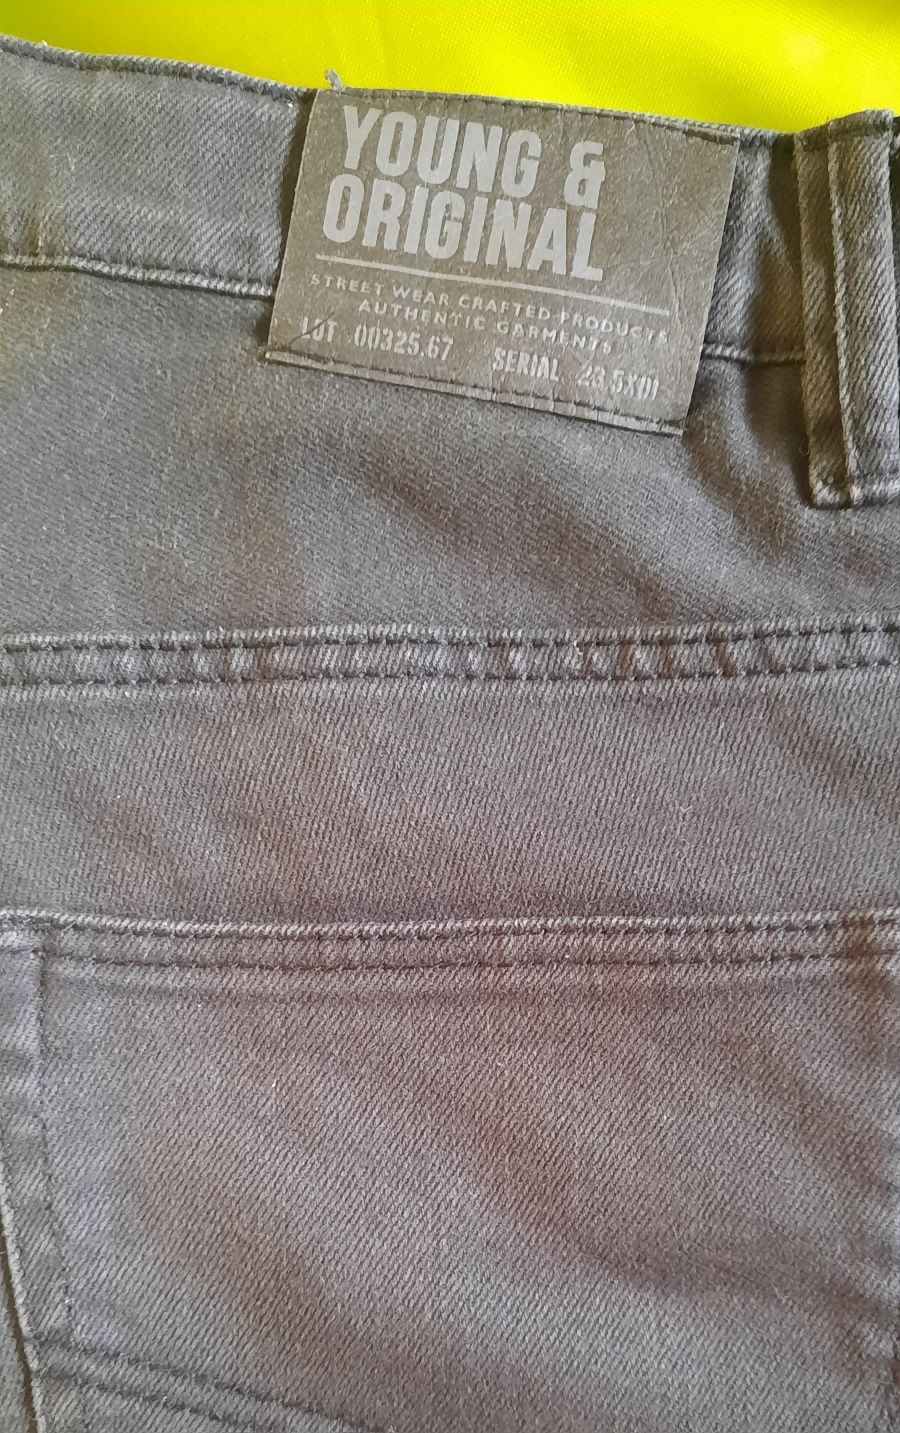 Spodnie jeansy dżinsy H&M czarne r. 170 cm 14 lat Stretch